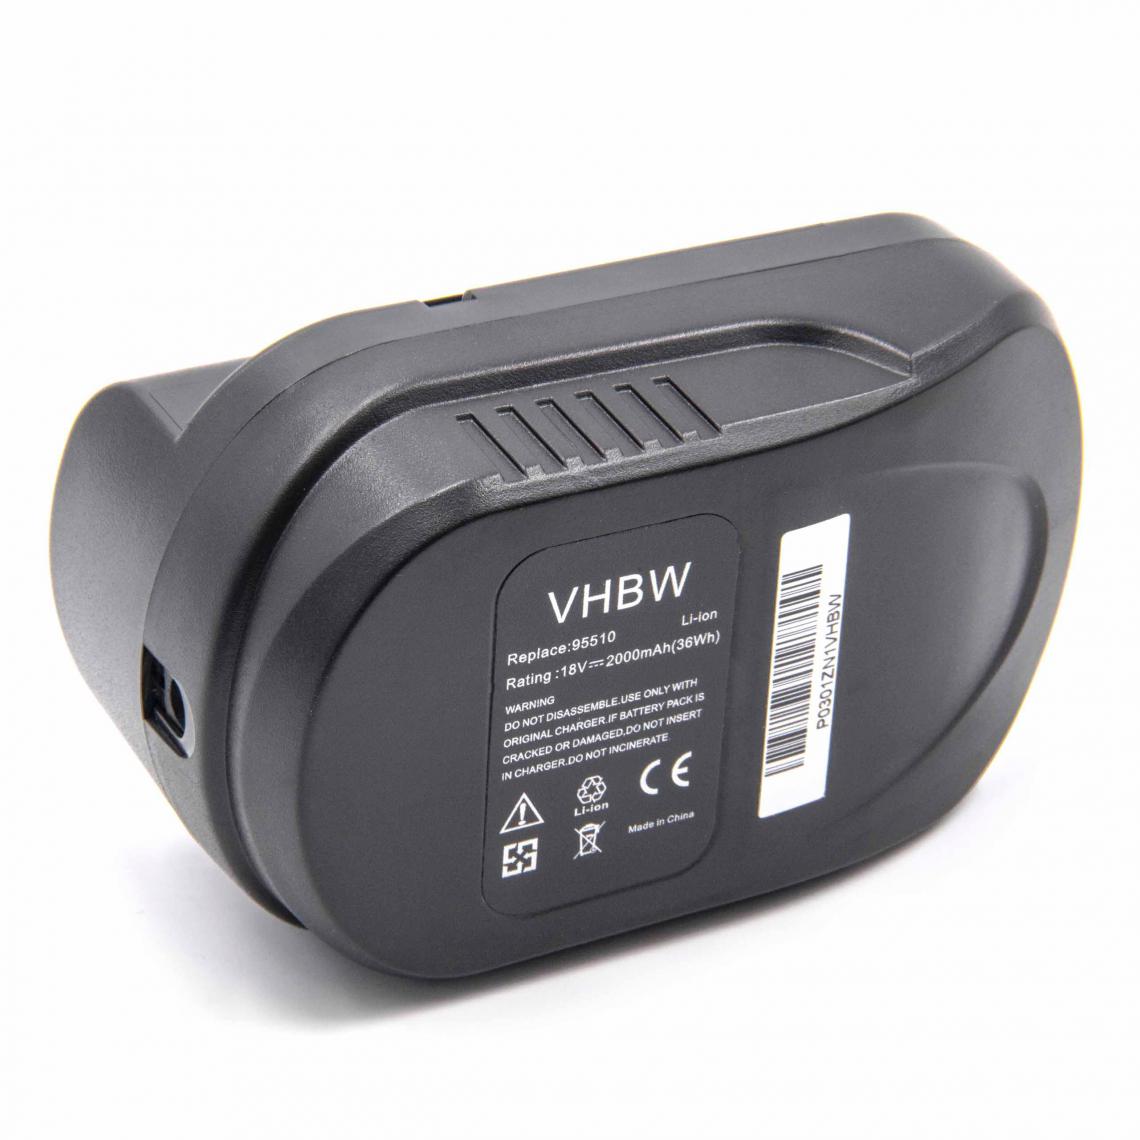 Vhbw - vhbw Li-Ion batterie 2000mAh (18V) pour outil électrique outil Powertools Tools Güde GHS 520 18 Li-Ion (95515), GHS 520 18 Li-Ion (95519) - Accessoires vissage, perçage